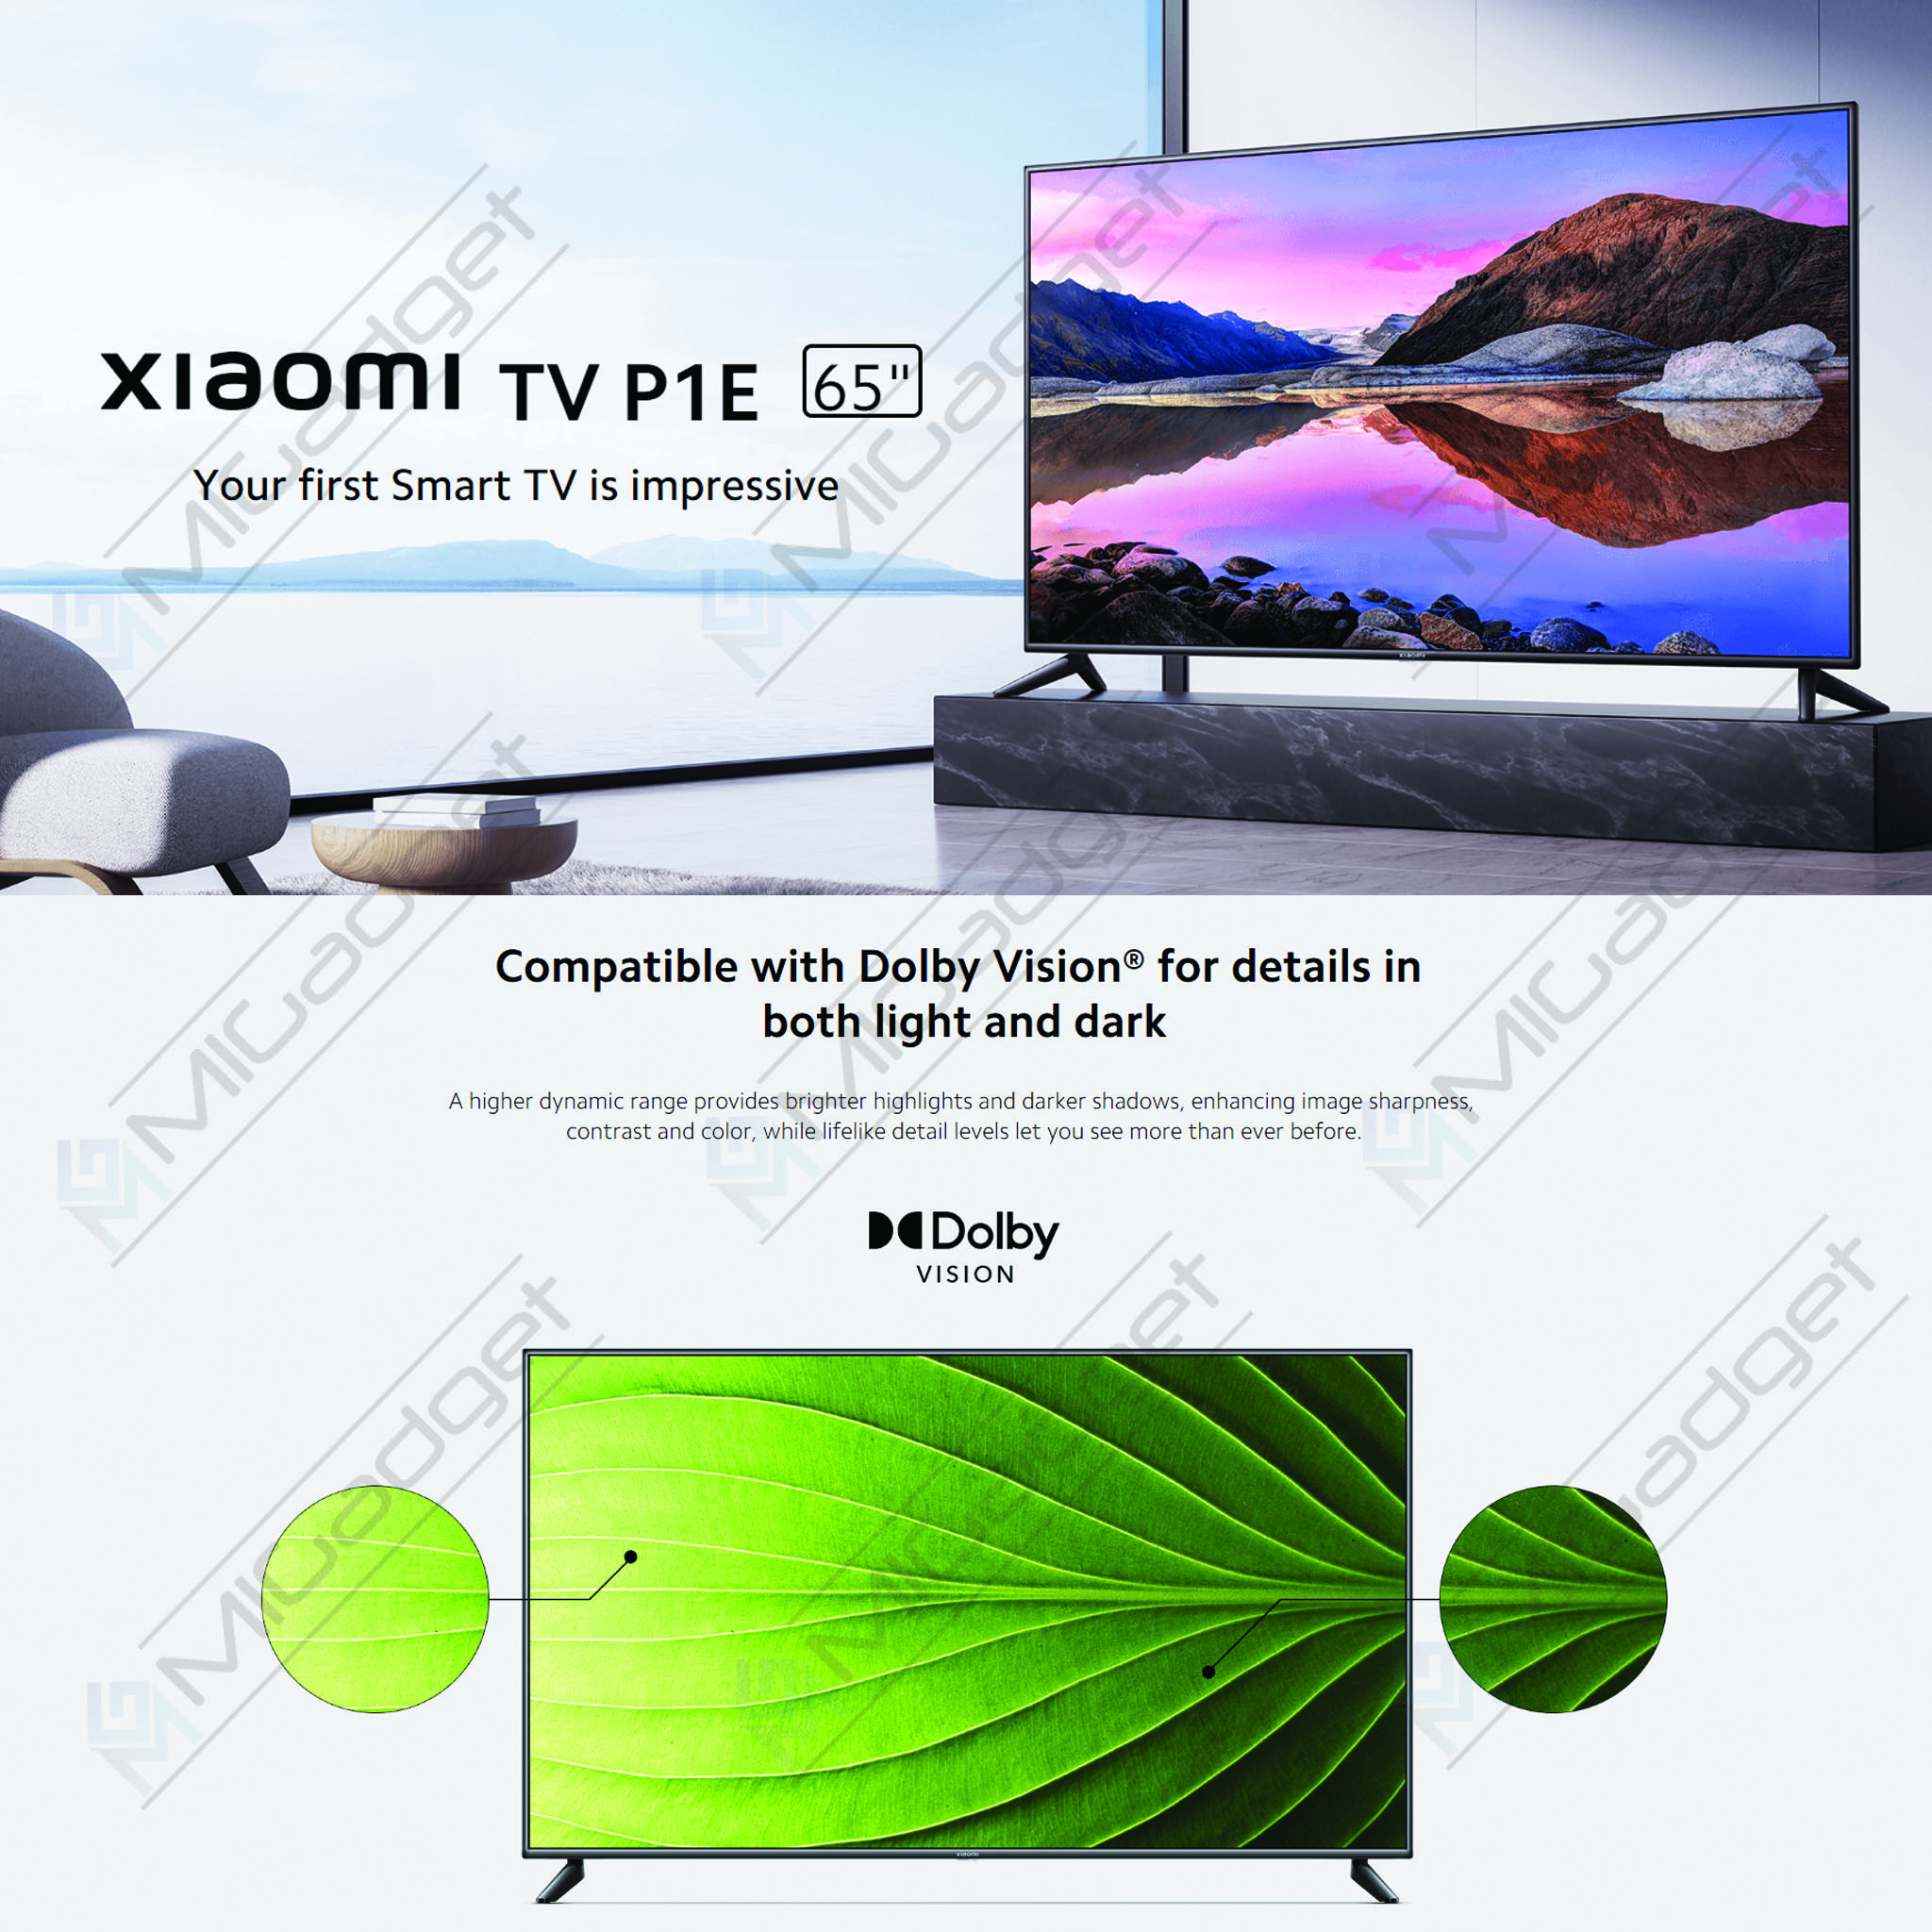 Xiaomi TV P1E 43 LED UltraHD 4K HDR10